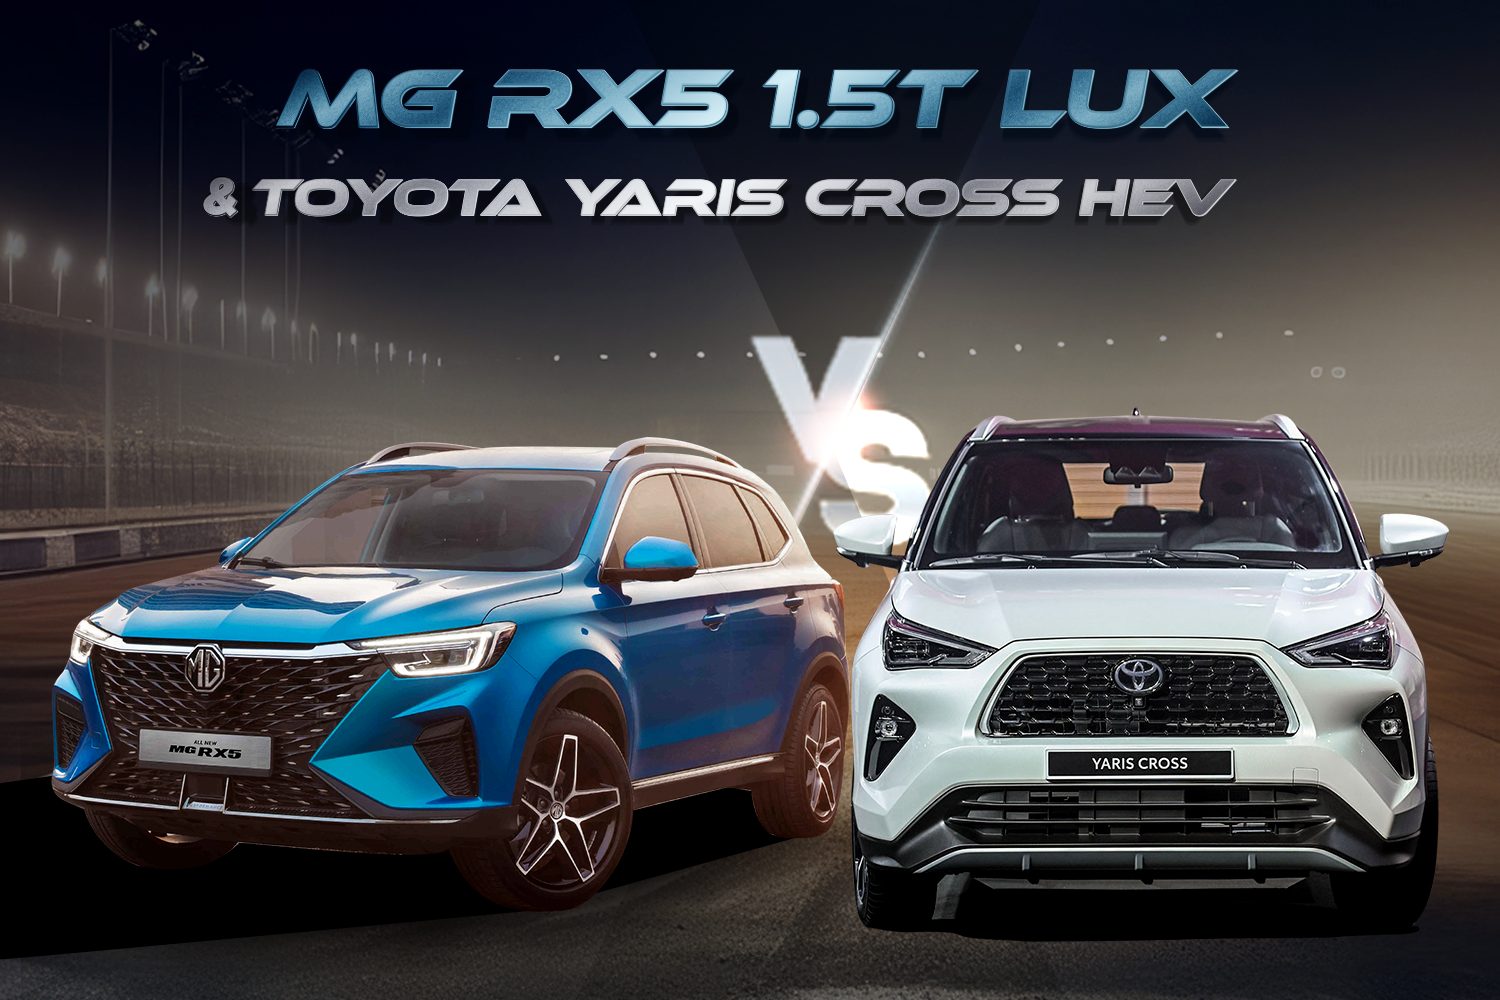 Giá trên 800 triệu đồng, nên chọn MG RX5 1.5T LUX hay Toyota Yaris Cross HEV?